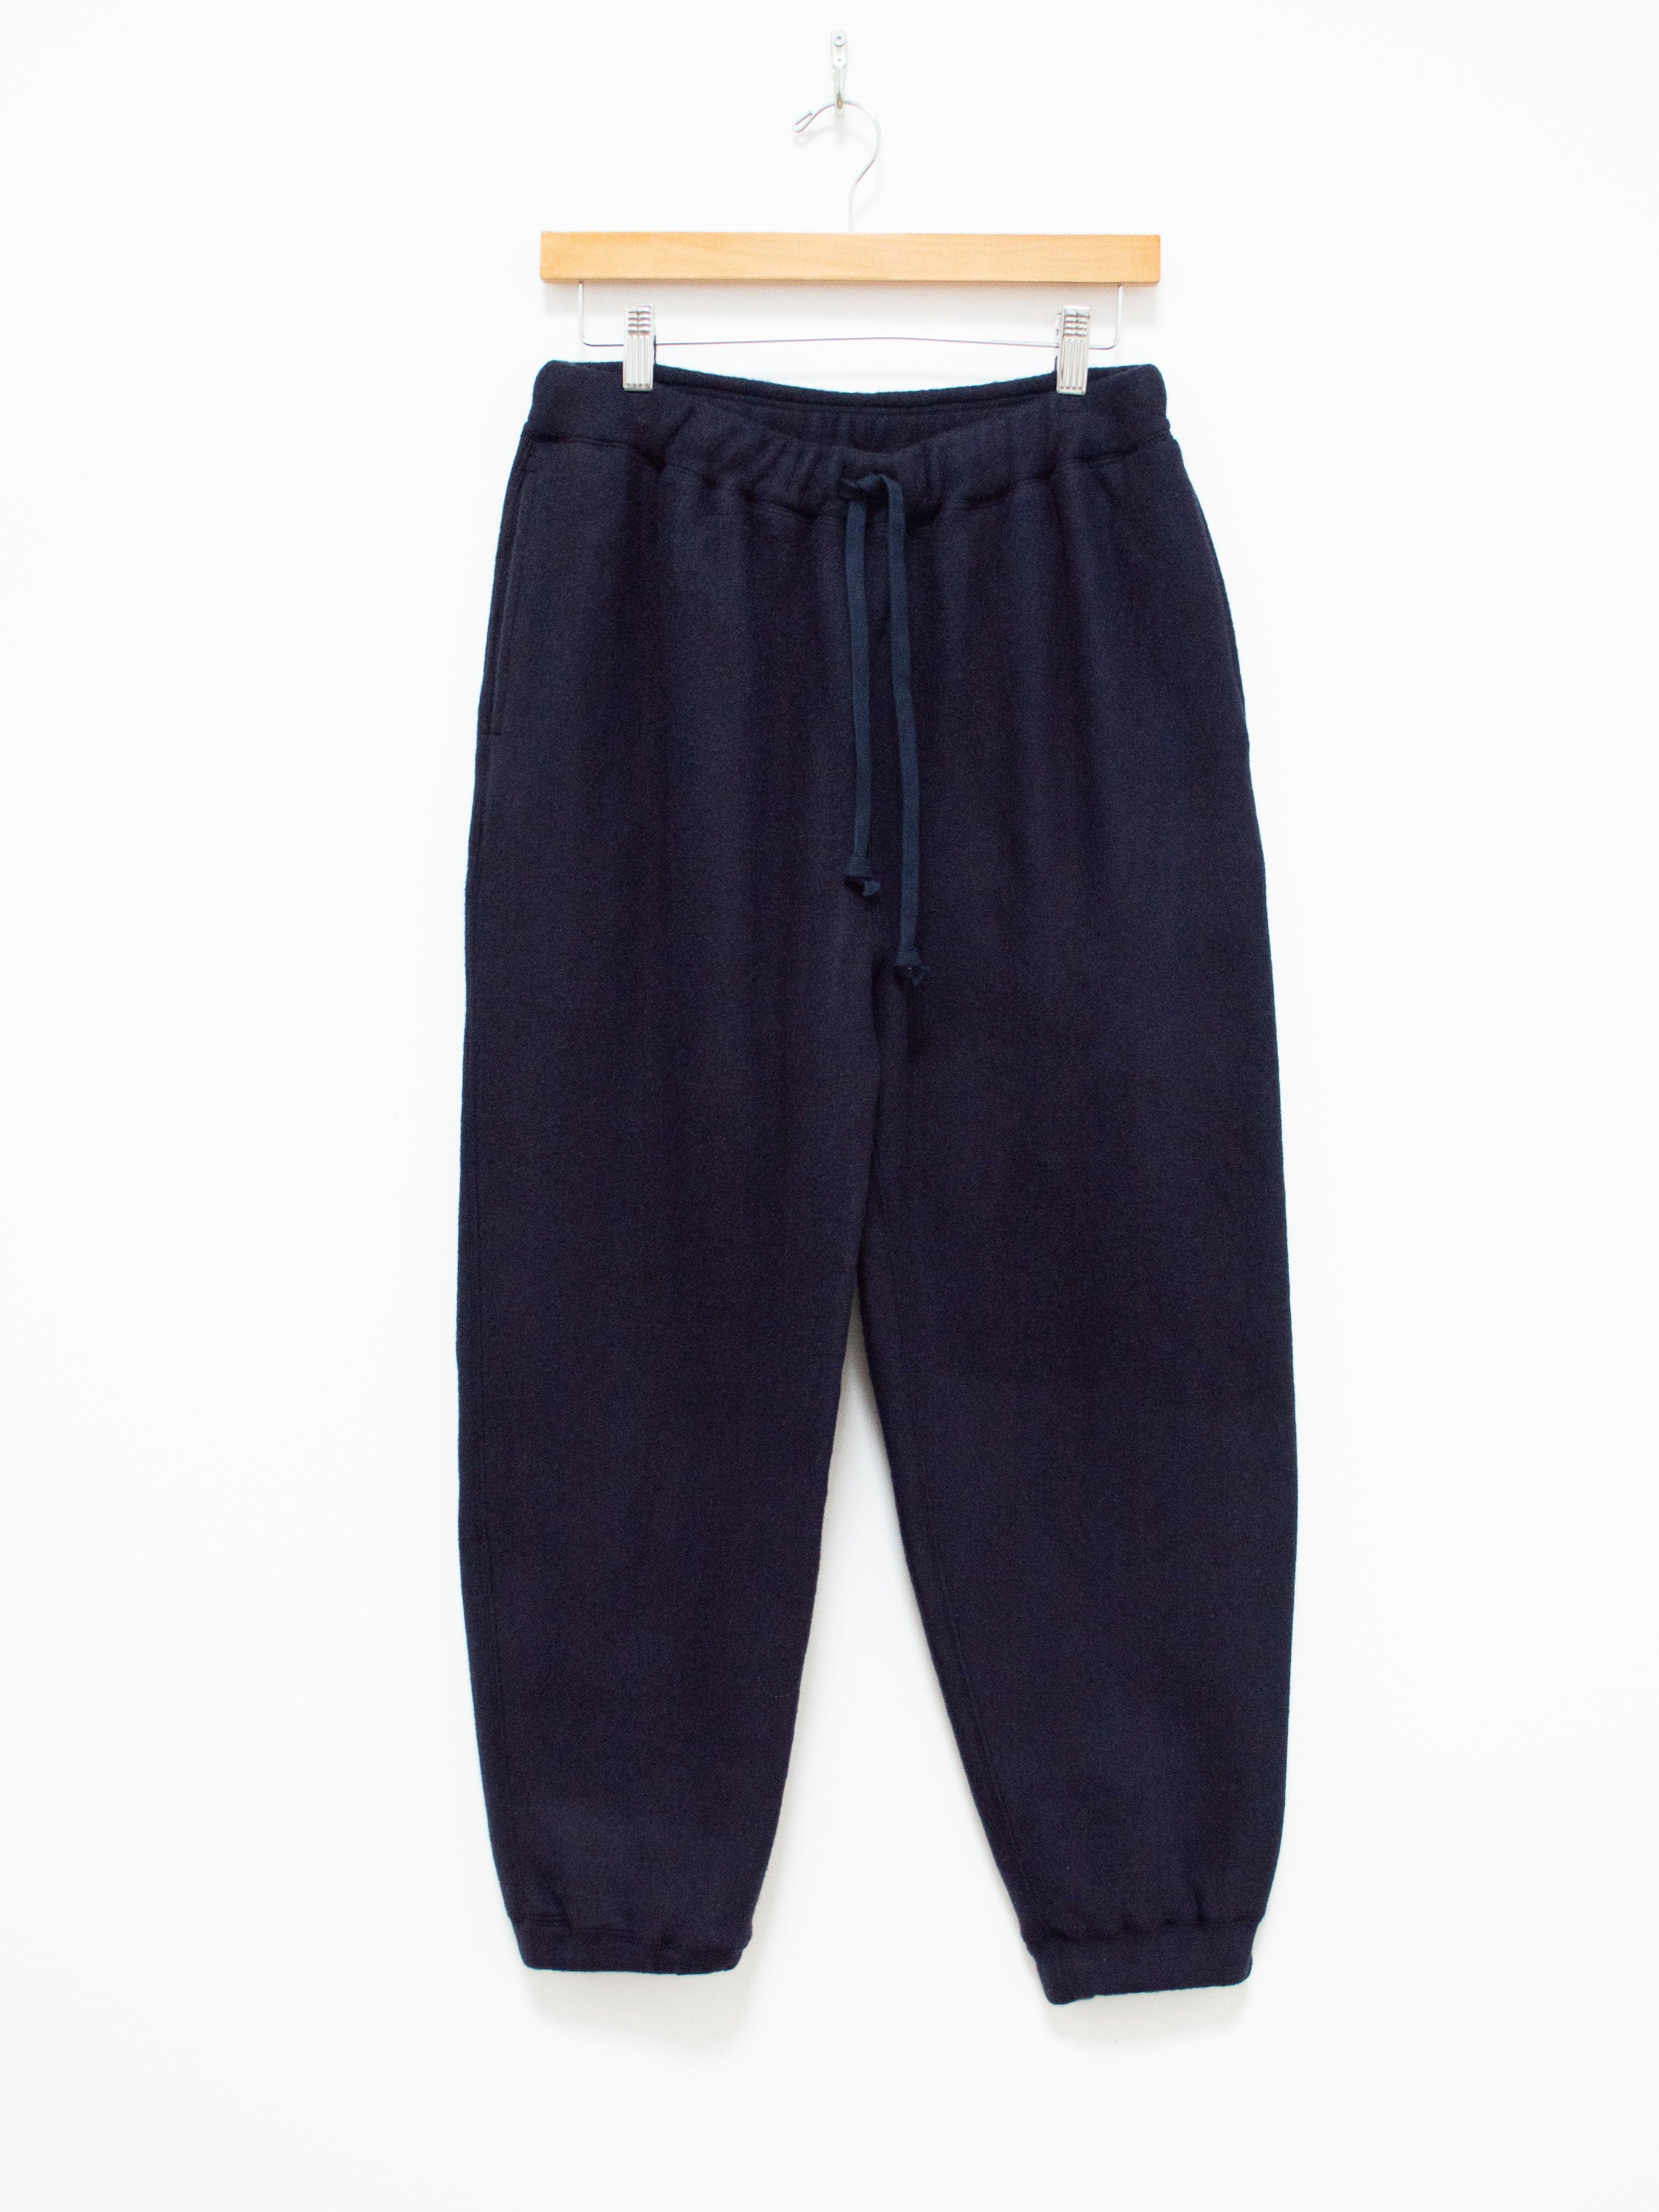 Namu Shop - ts(s) Wool - Cuffed Jersey Navy Sweatpants